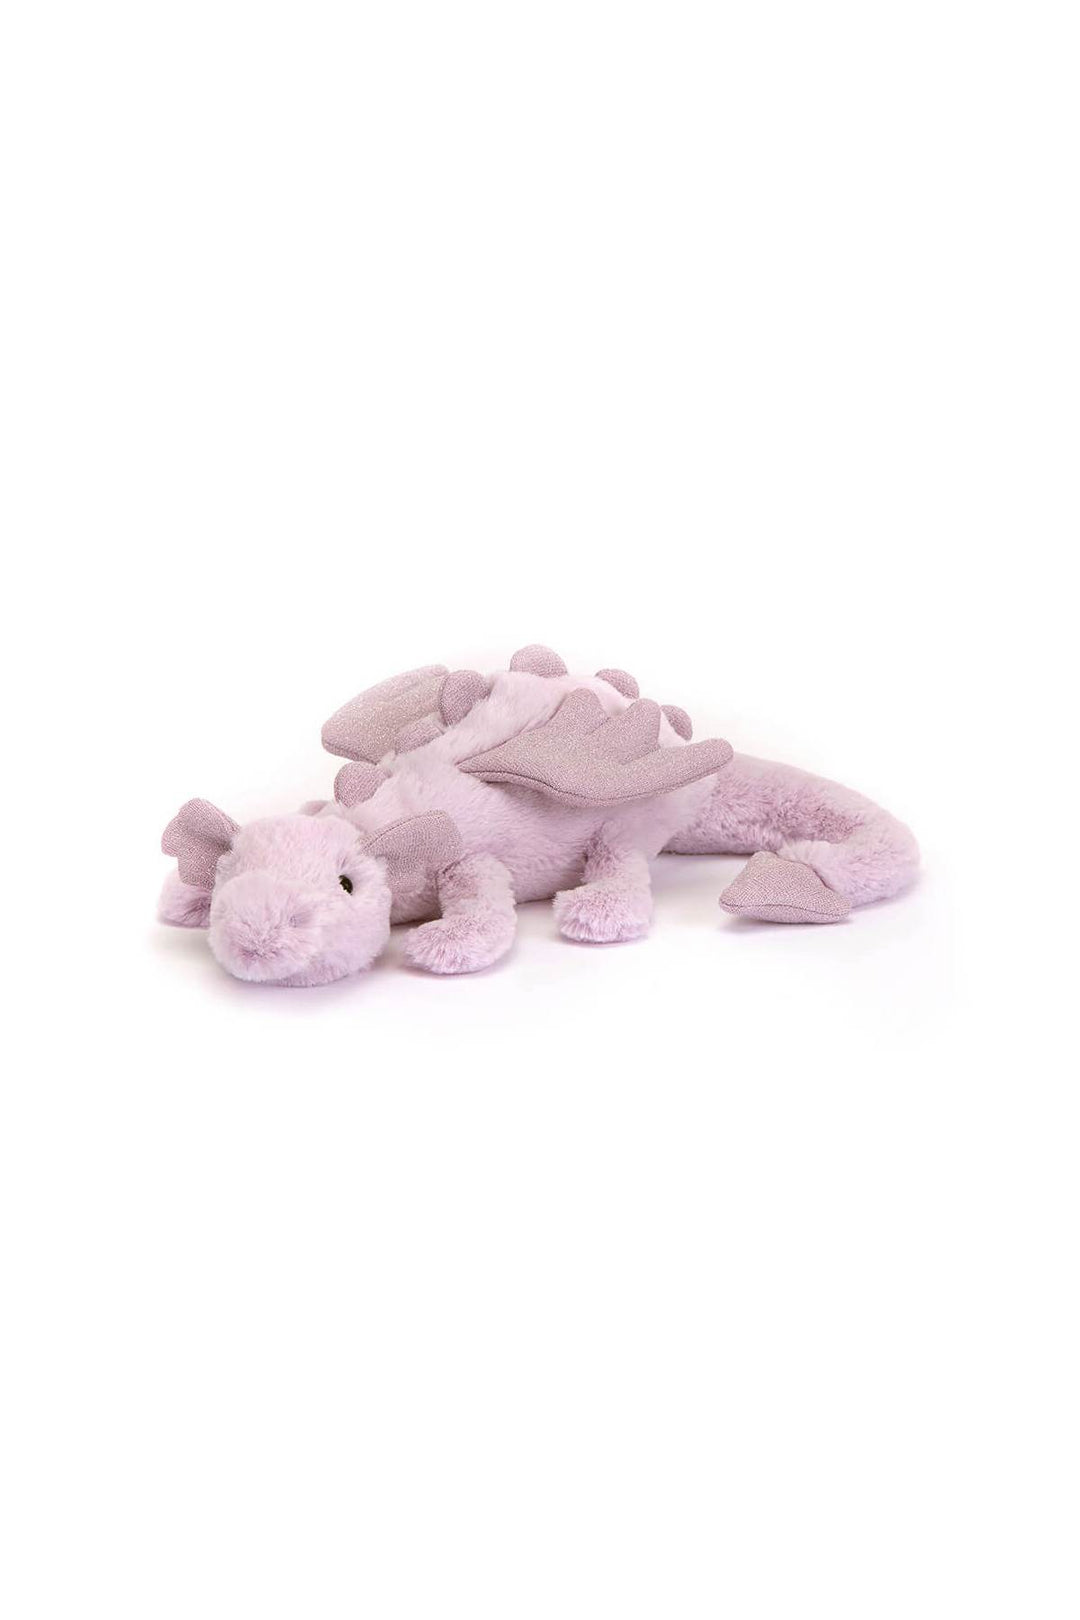 plush lavender dragon toy-0